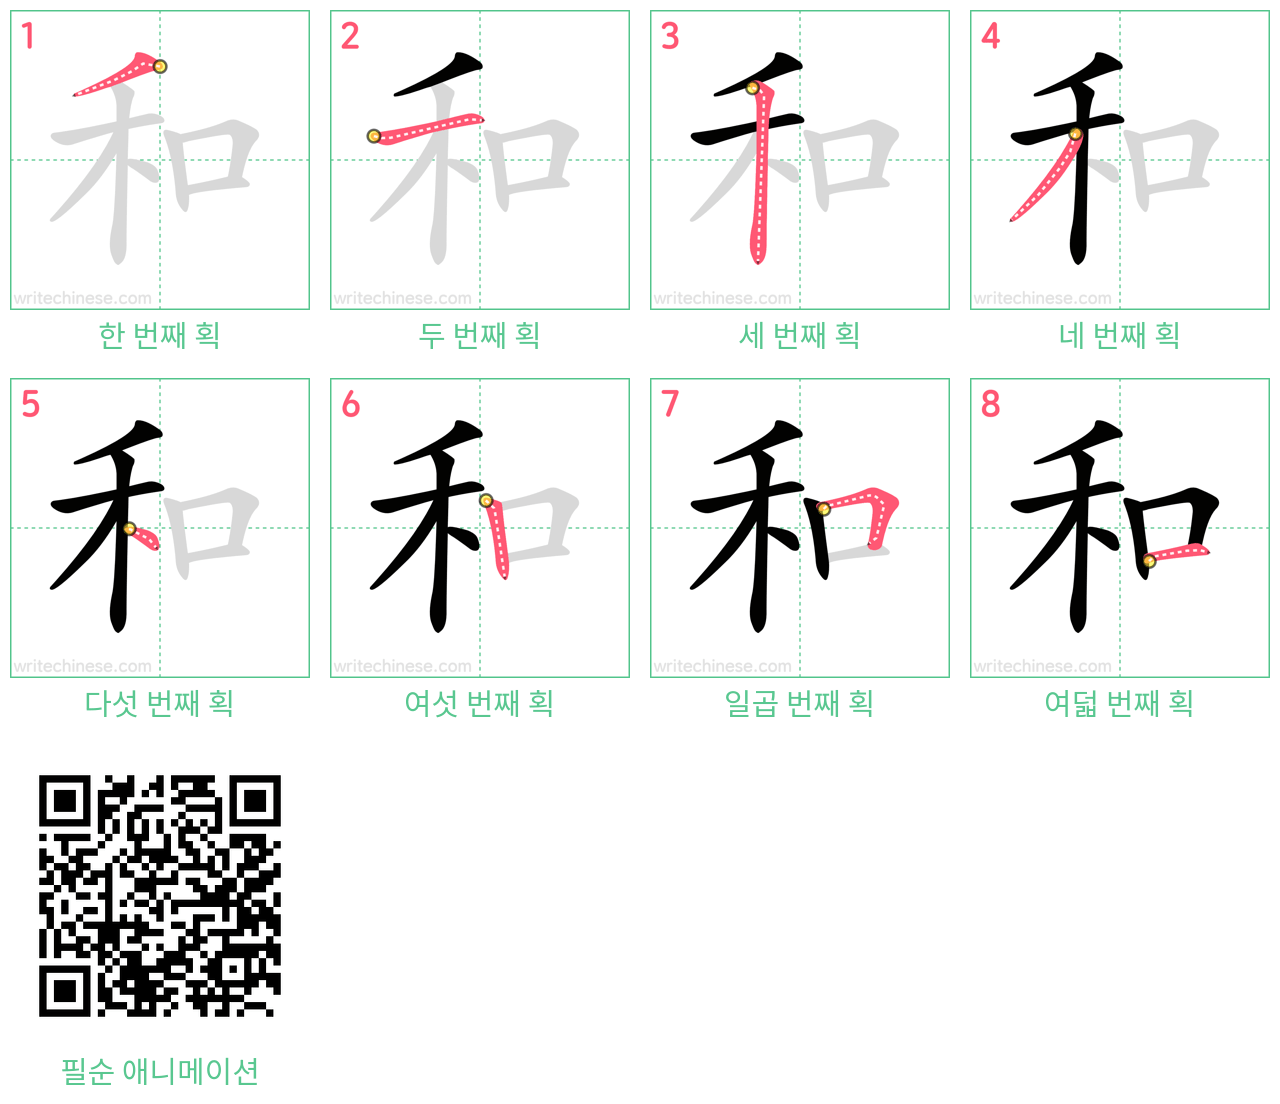 和 step-by-step stroke order diagrams